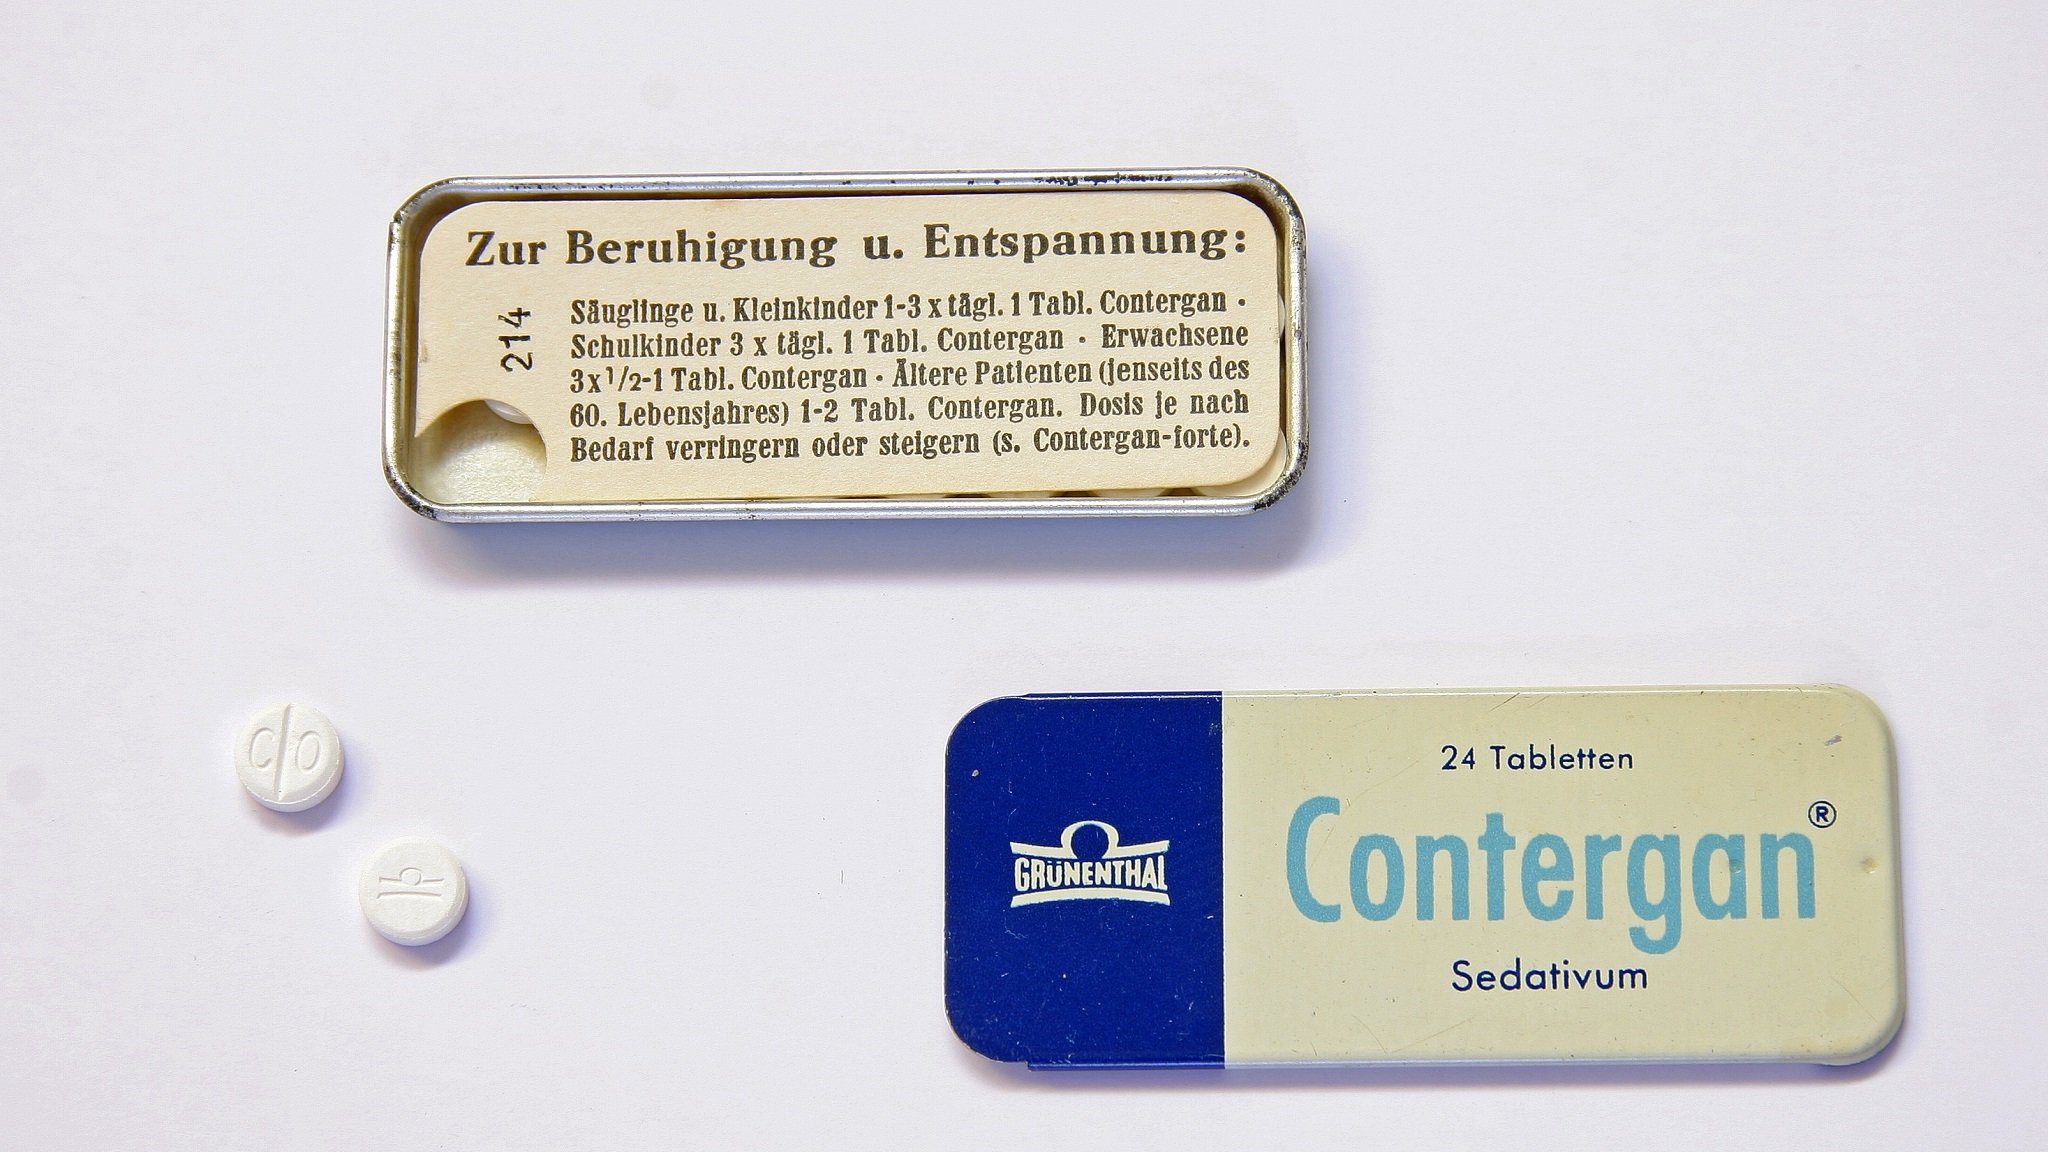 Original Contergan-Packung mit Contergan-Tabletten